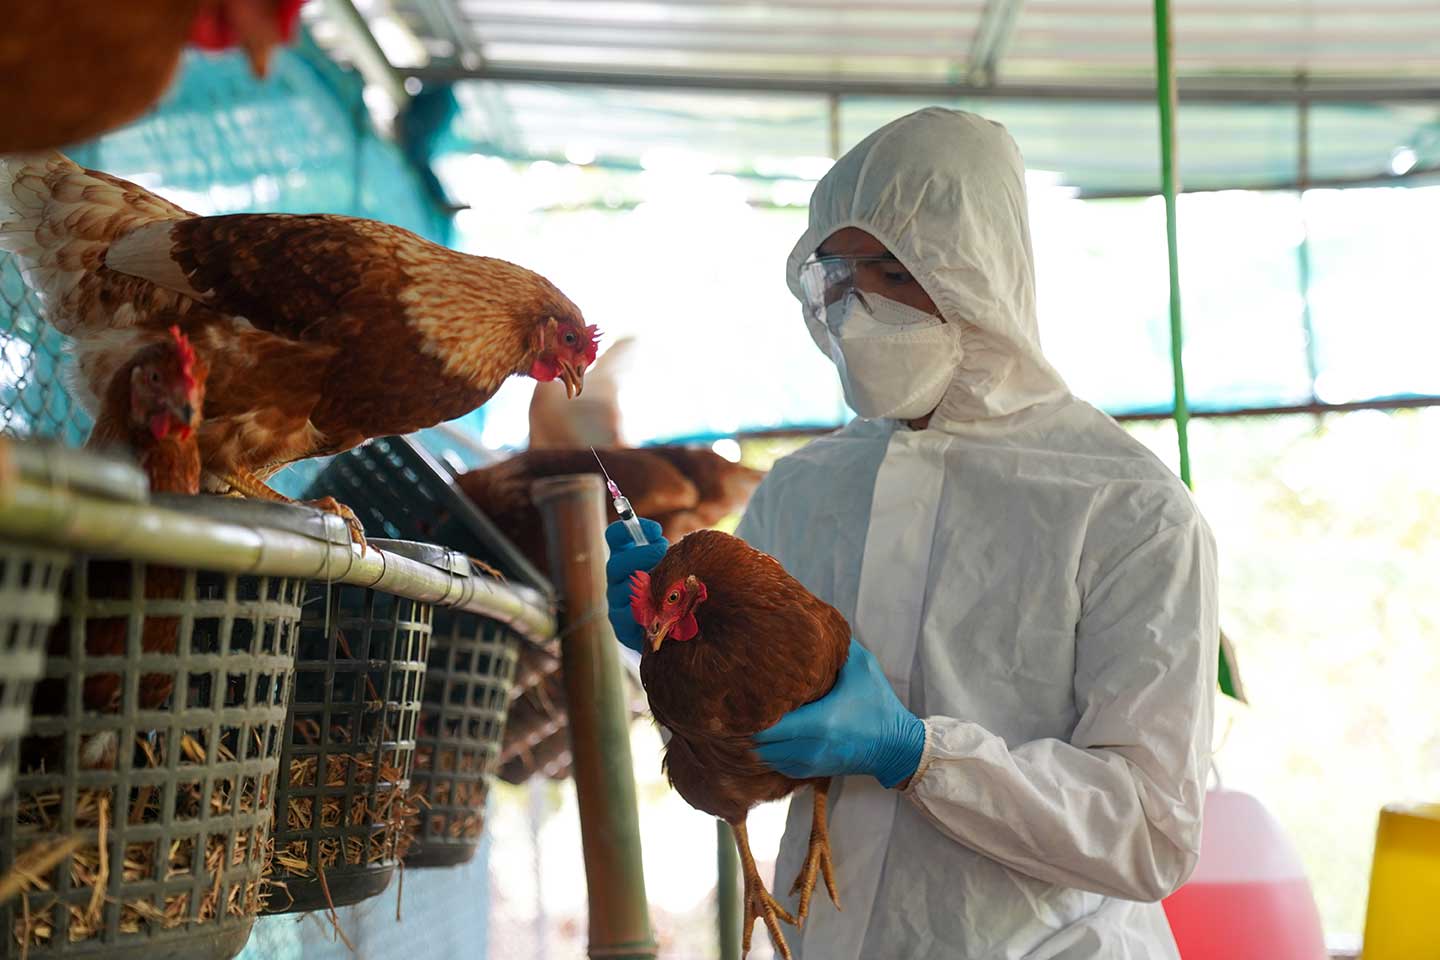 Gripe aviar en México